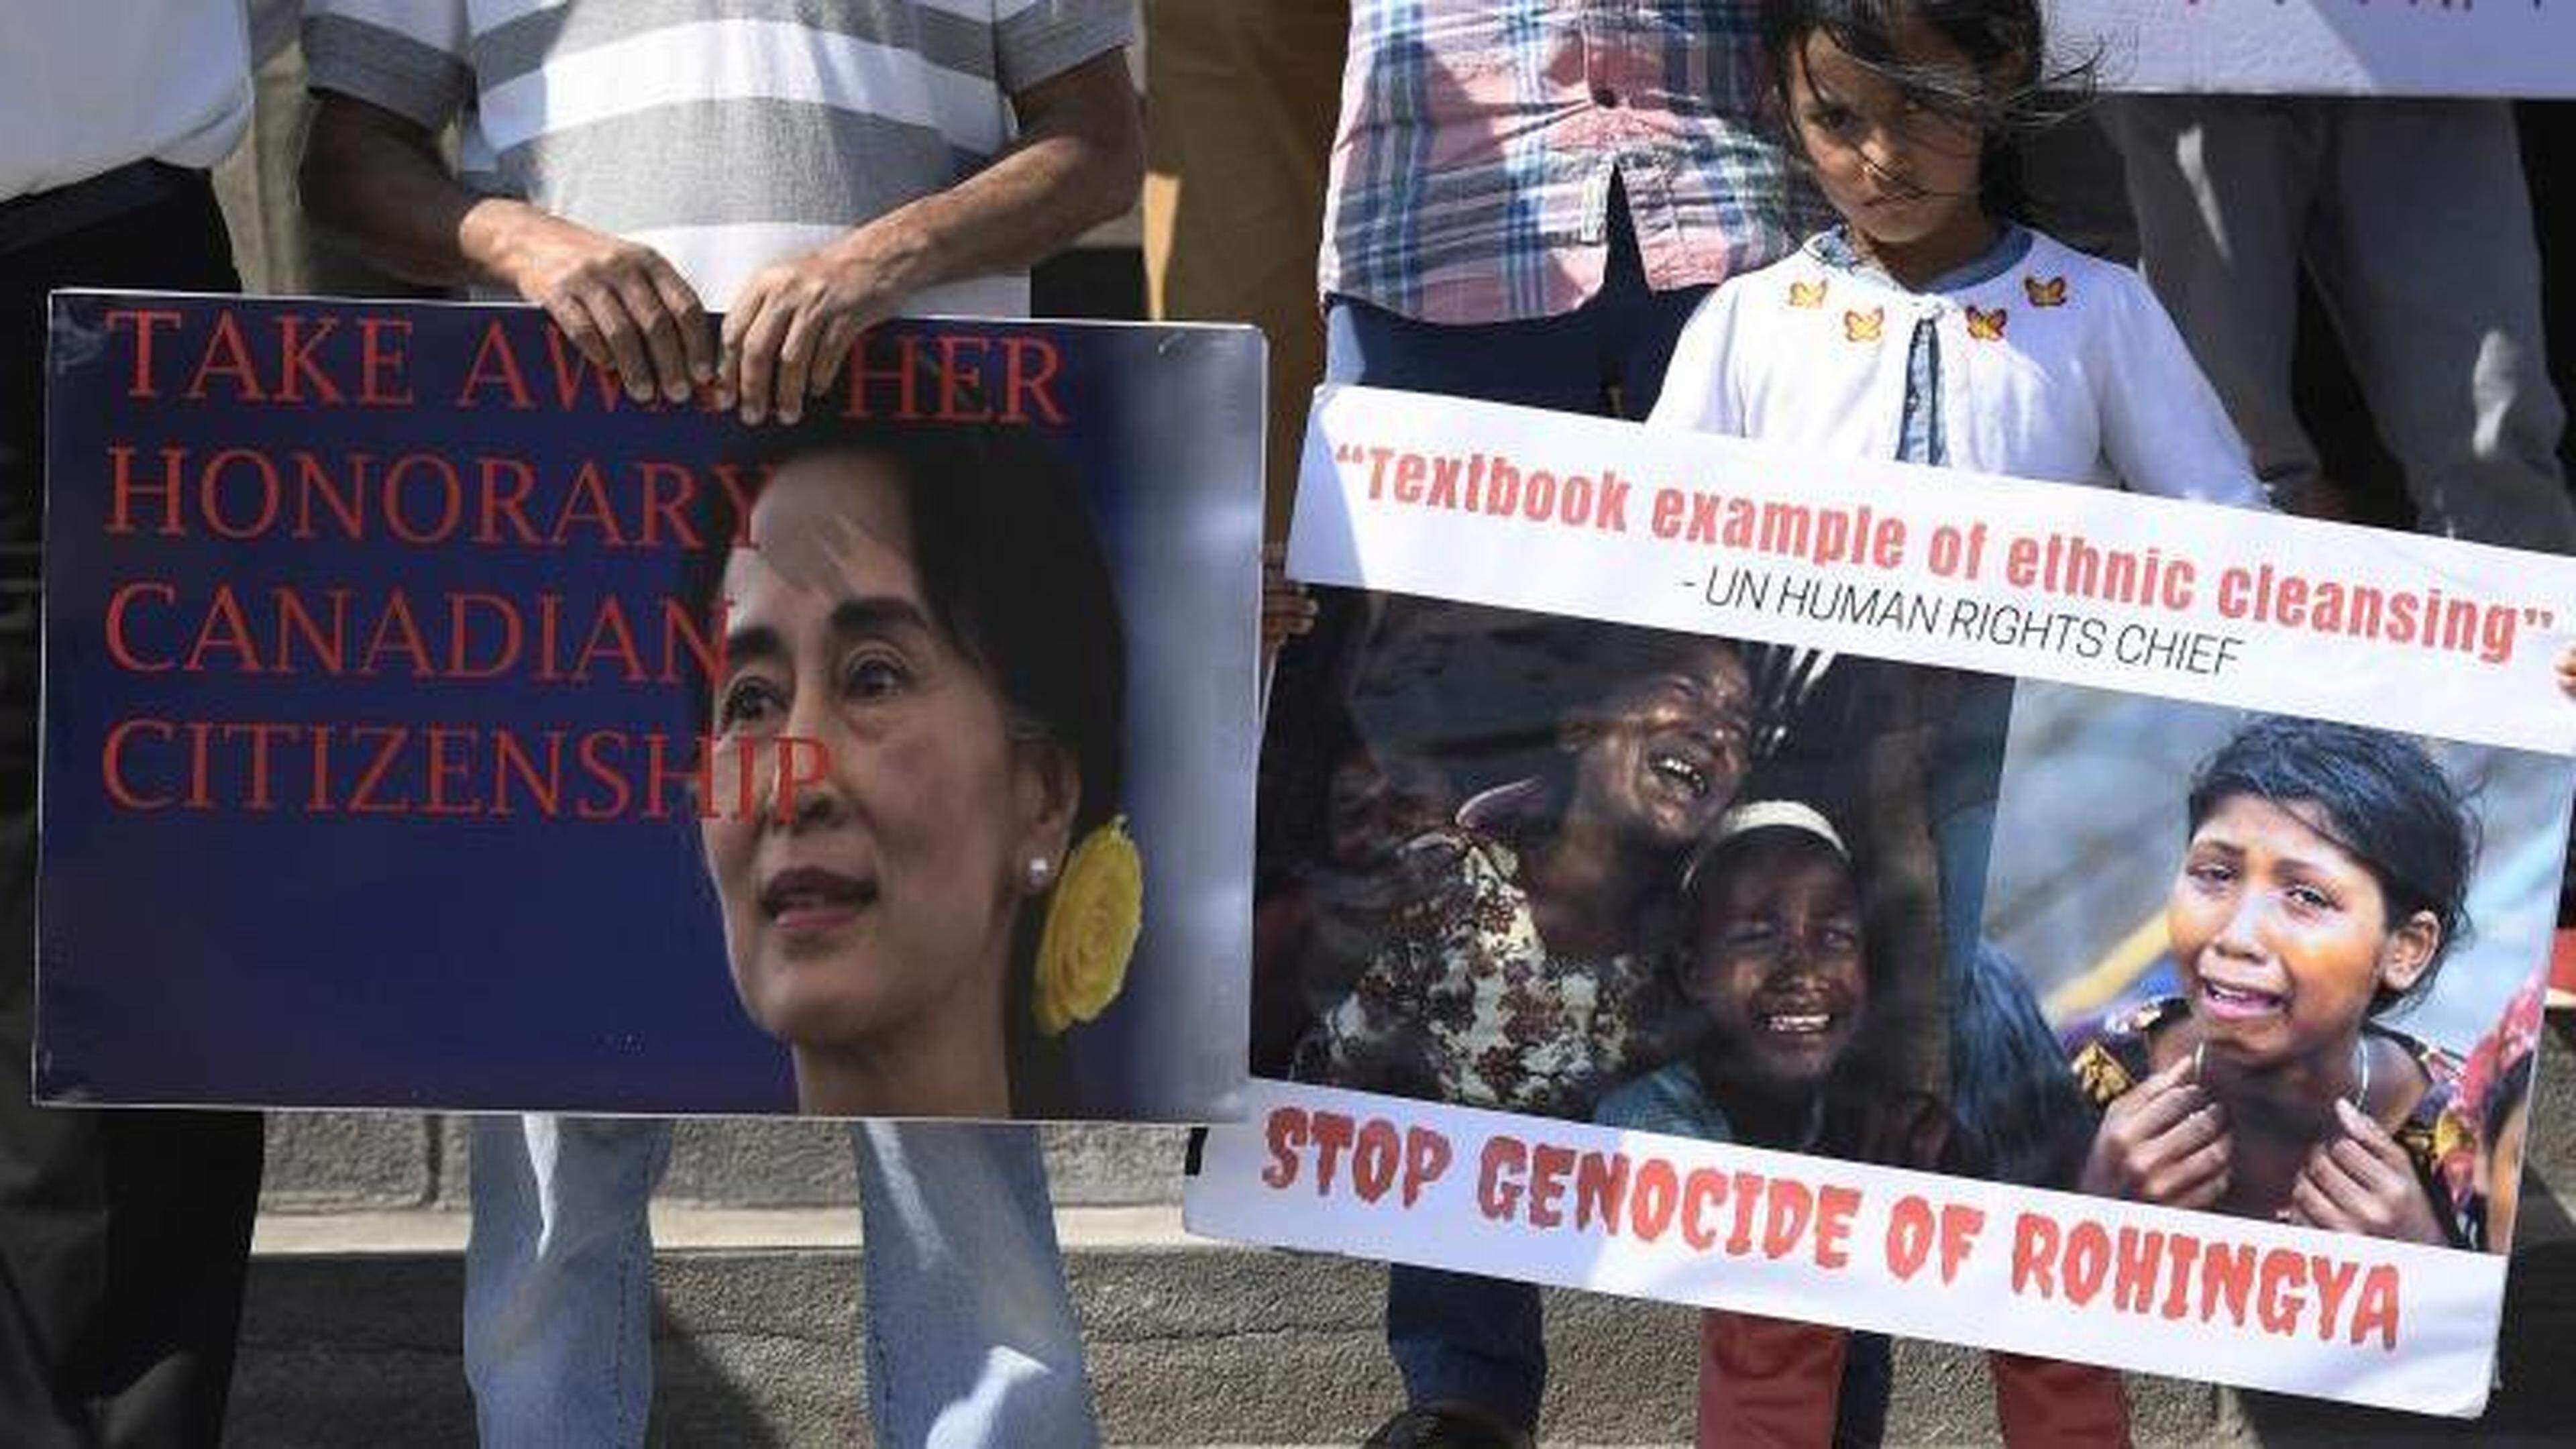 Protest in Kanada: Demonstranten mit dem Konterfei von Myanmars Regierungschefin Aung San Suu Kyi und der Forderung, ihr die ehrenhalber verliehene kanadische Staatsbürgerschaft wieder abzuerkennen.